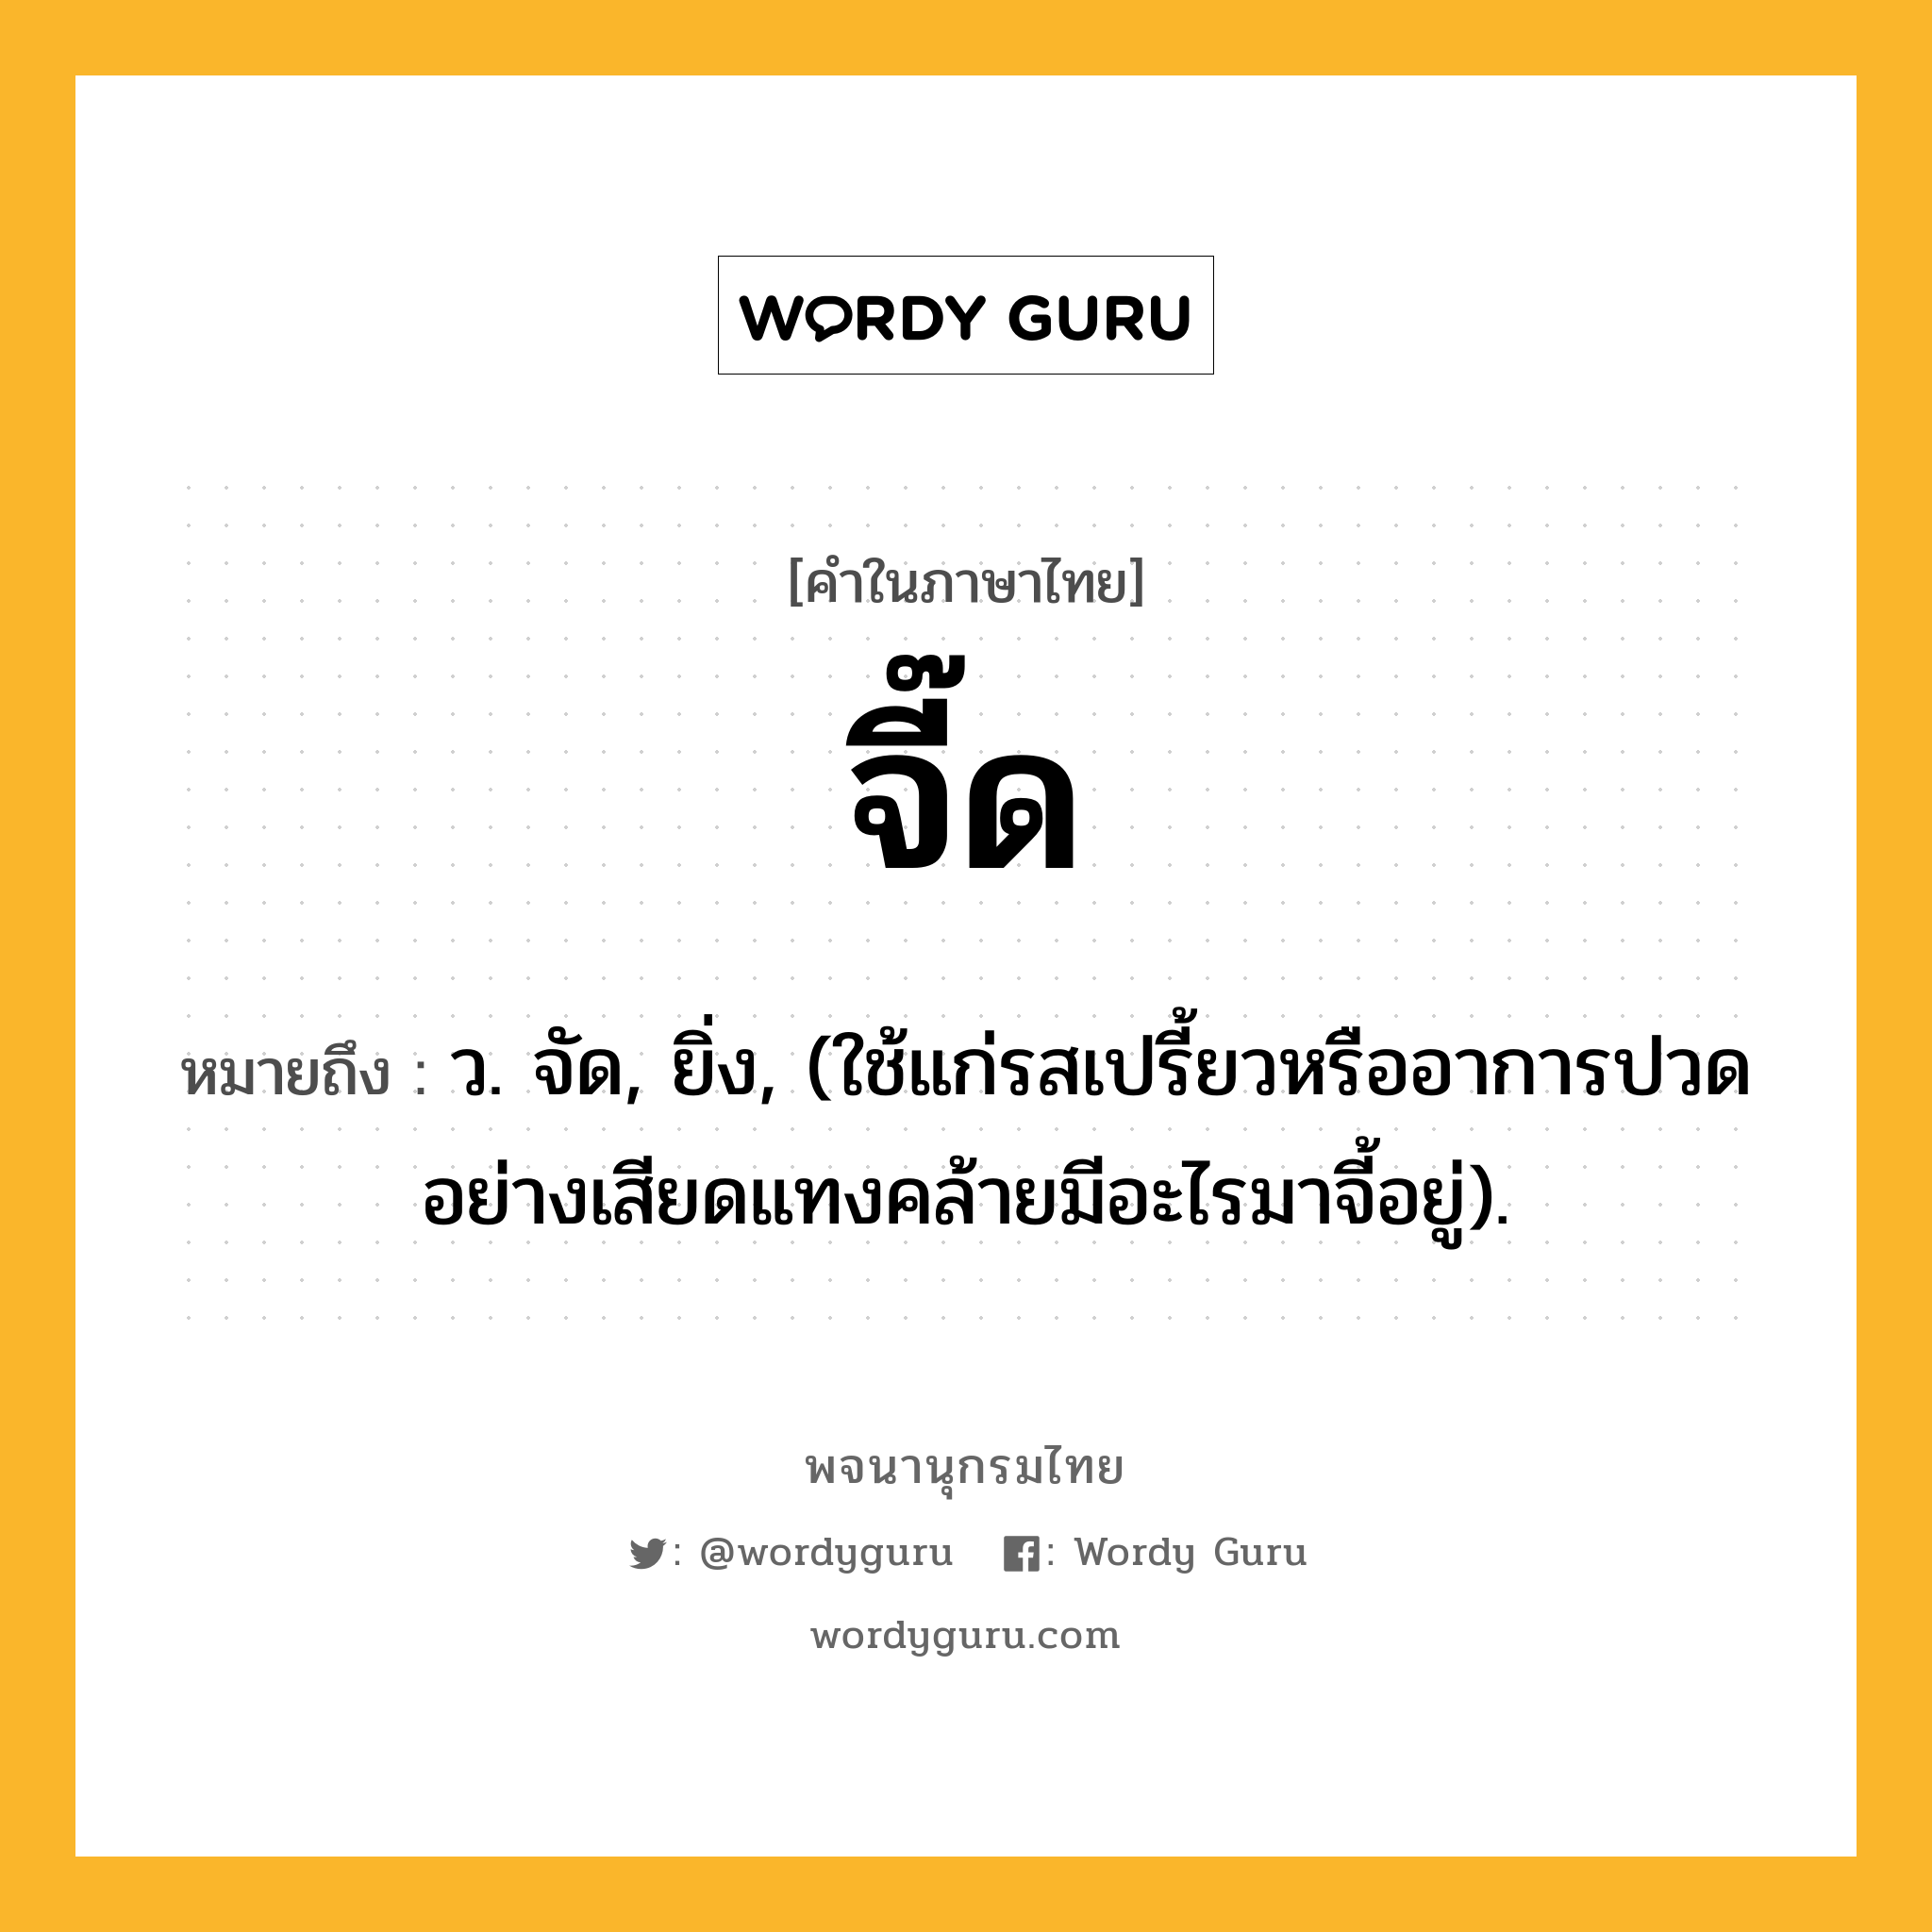 จี๊ด ความหมาย หมายถึงอะไร?, คำในภาษาไทย จี๊ด หมายถึง ว. จัด, ยิ่ง, (ใช้แก่รสเปรี้ยวหรืออาการปวดอย่างเสียดแทงคล้ายมีอะไรมาจี้อยู่).